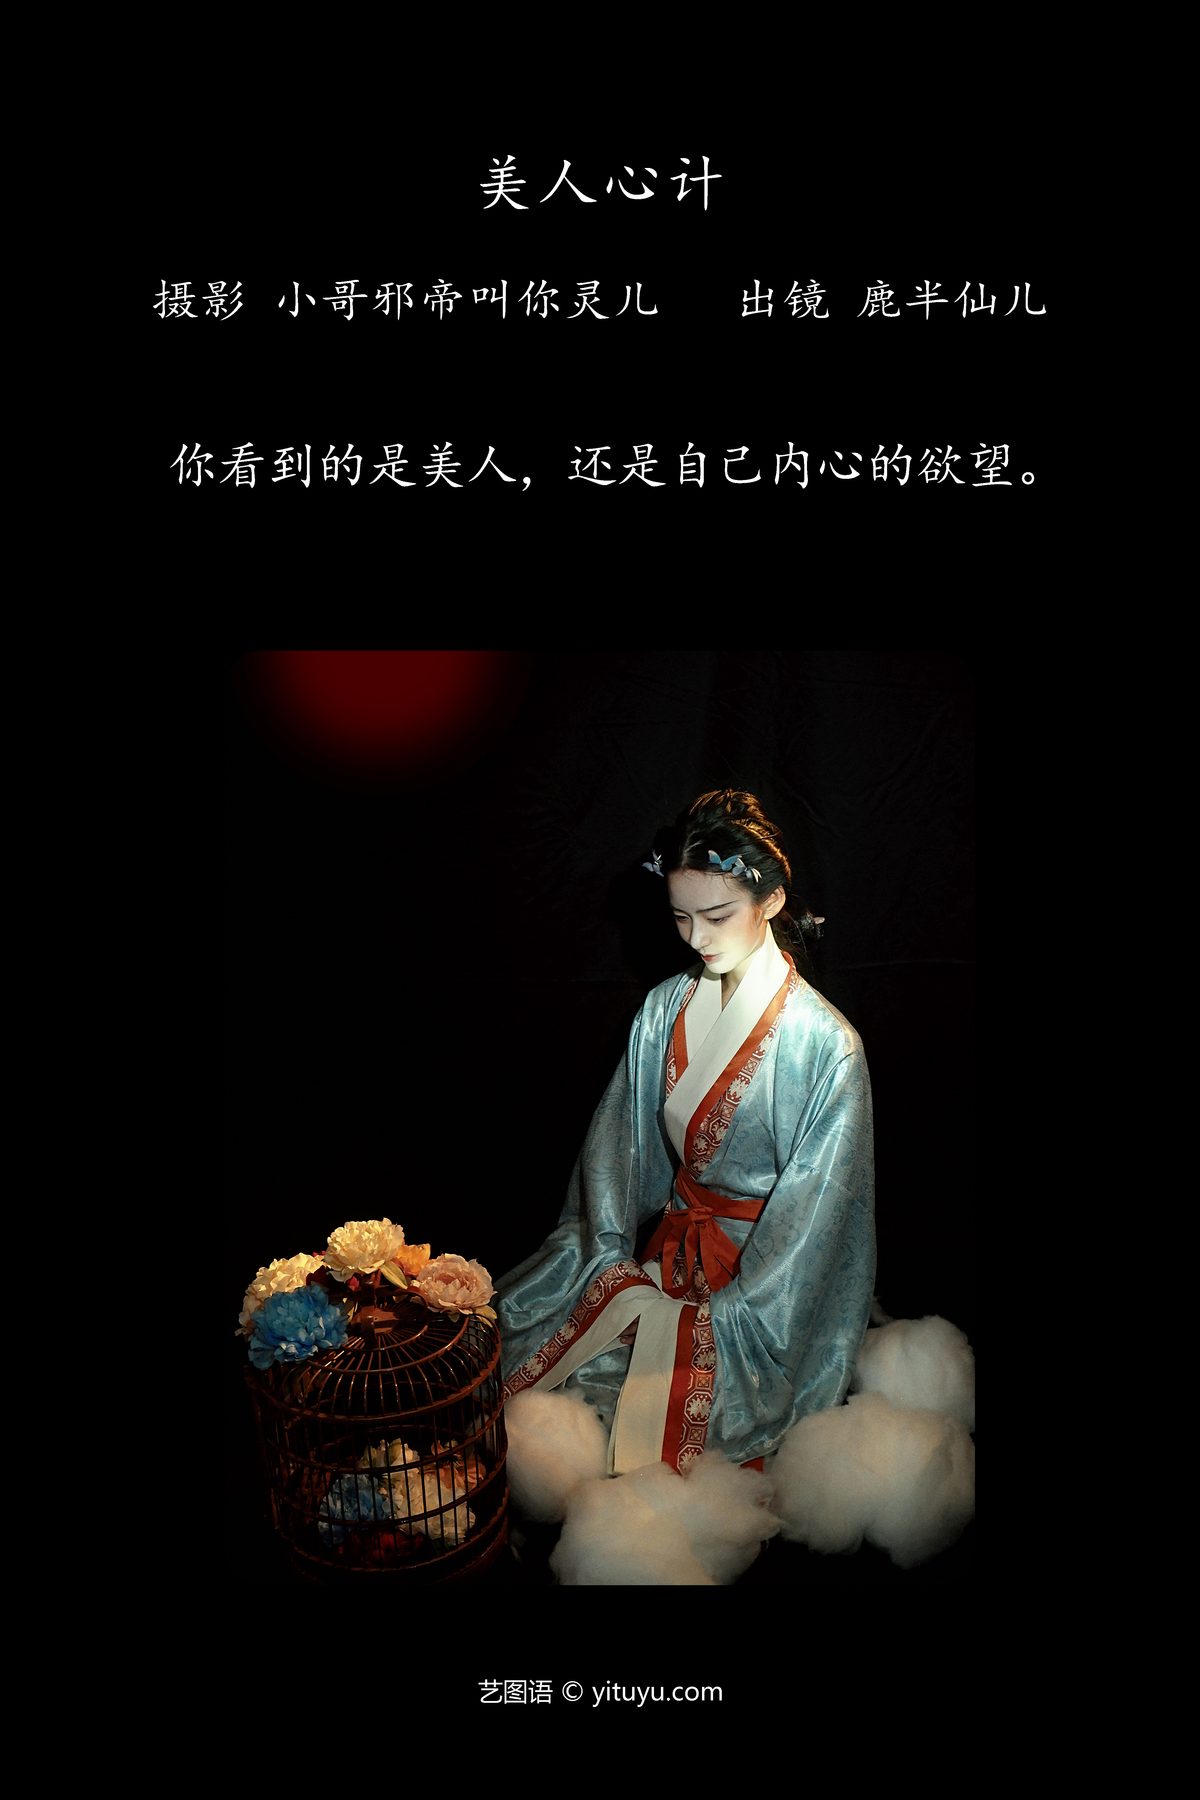 YiTuYu艺图语 Vol 4604 Lu Ban Xian Er 0001 0567257350.jpg